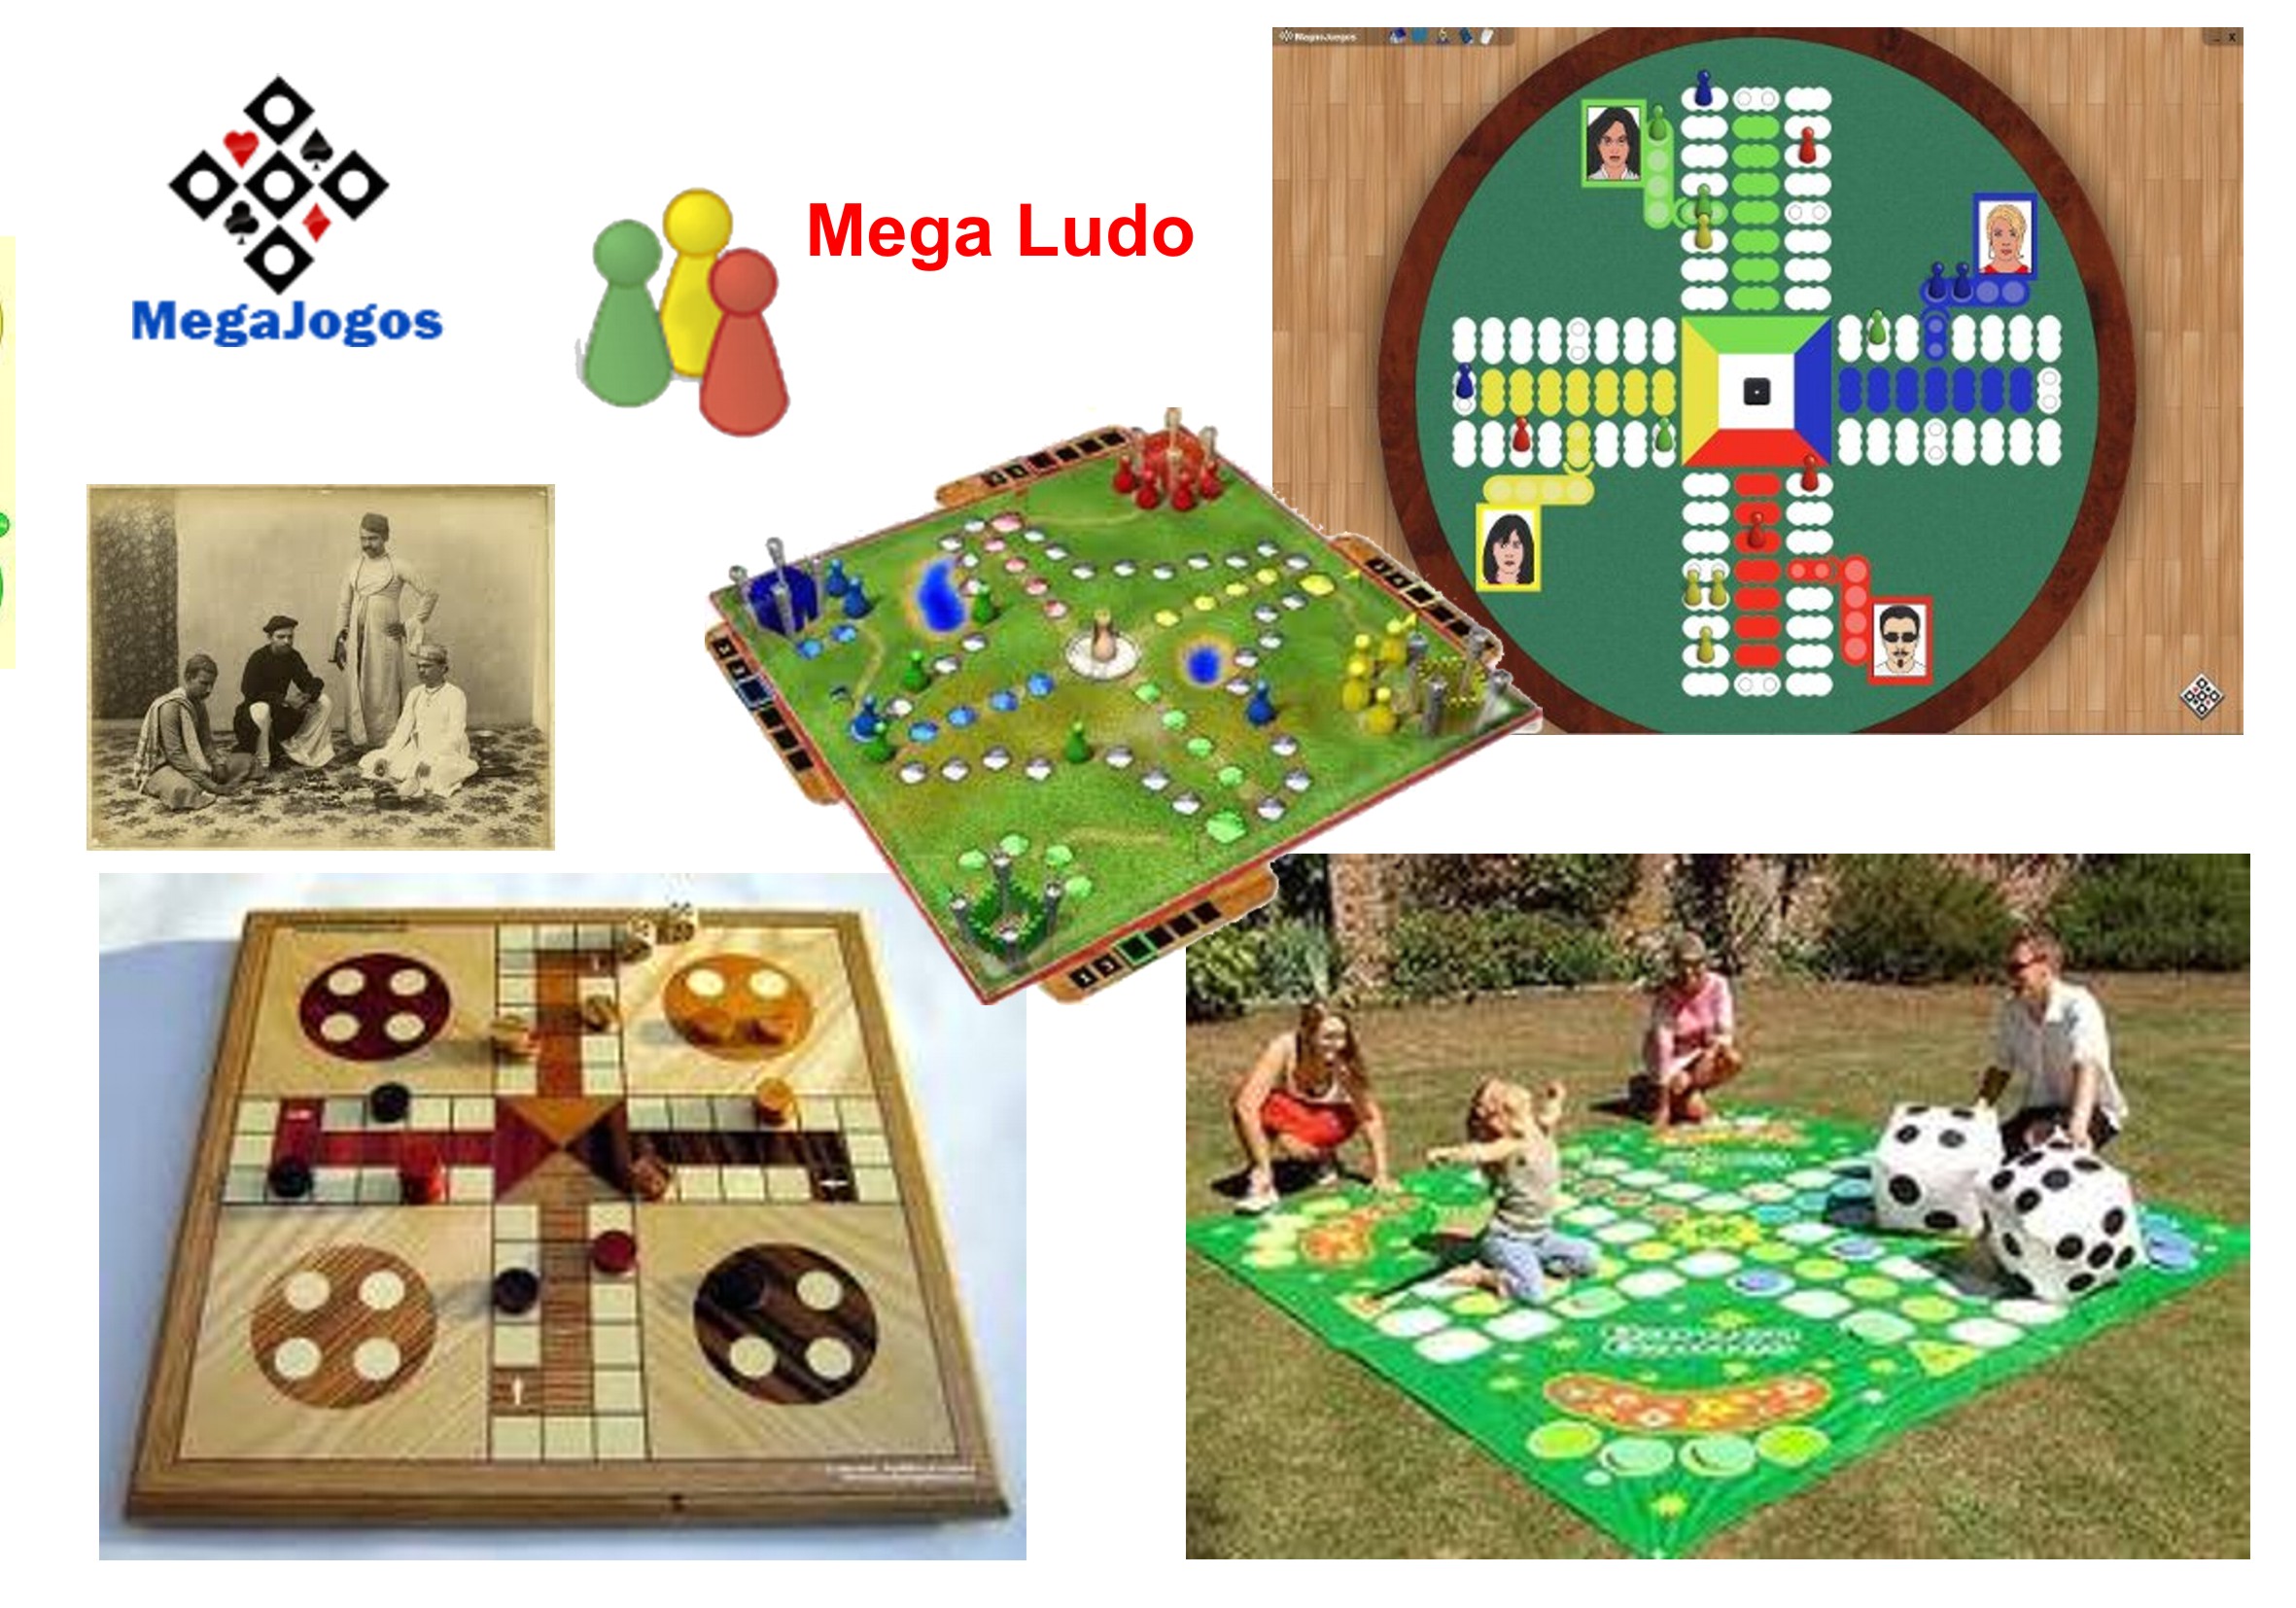 Blog Oficial do MegaJogos - Tudo sobre o mundo dos Jogos de Cartas